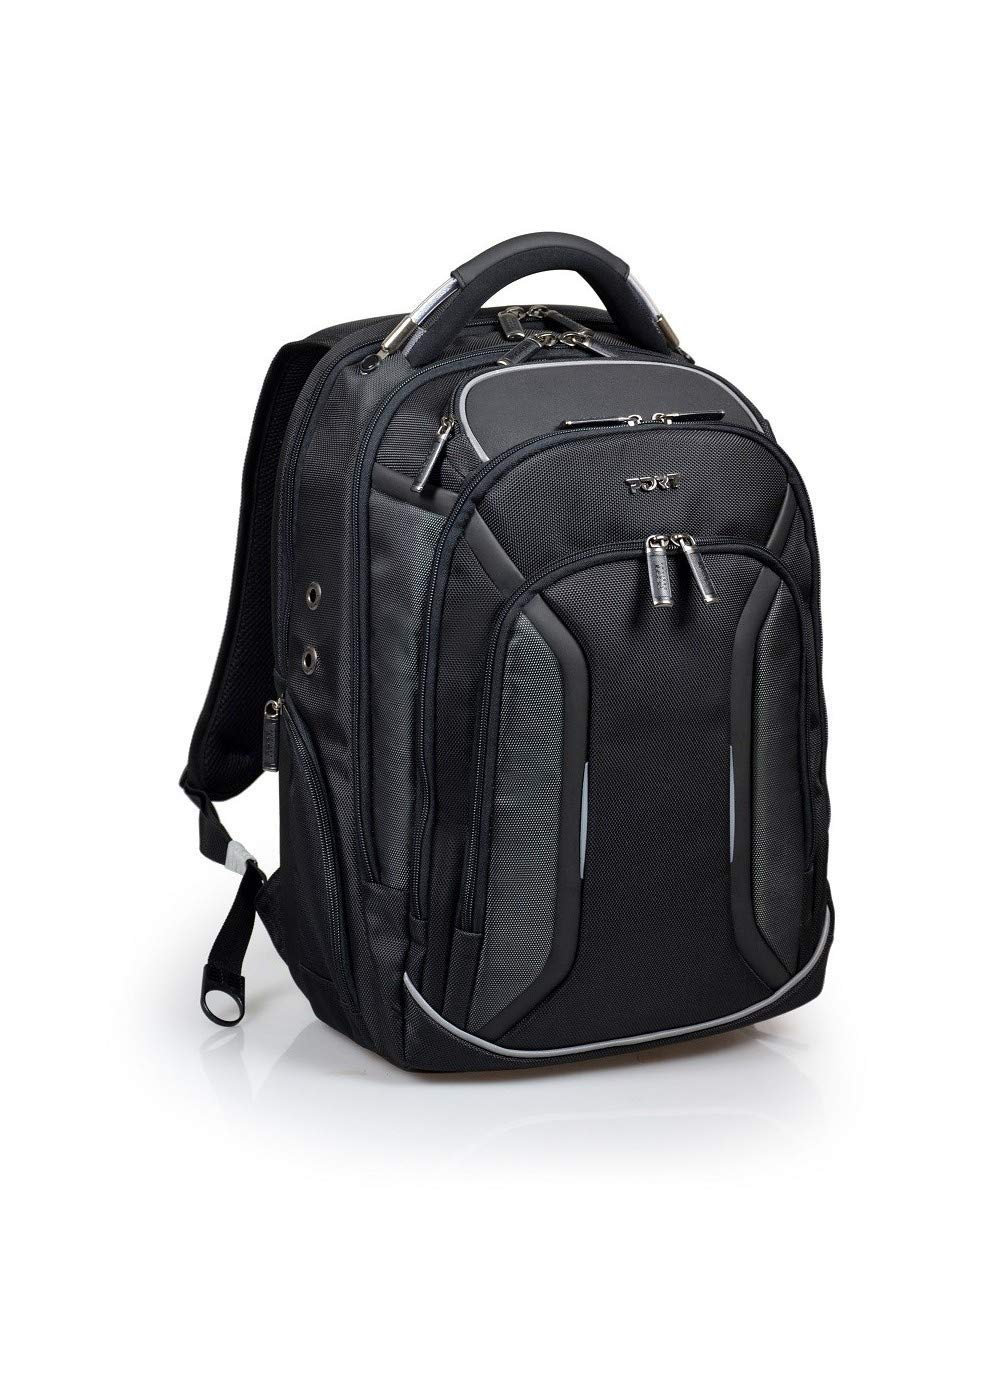 Port Designs Unisex-Adult Backpack-Sac à DOS Business Pour PC Portable Melbourne Laptop-Rucksack, 39,6 cm (15,6 Zoll), Schwarz